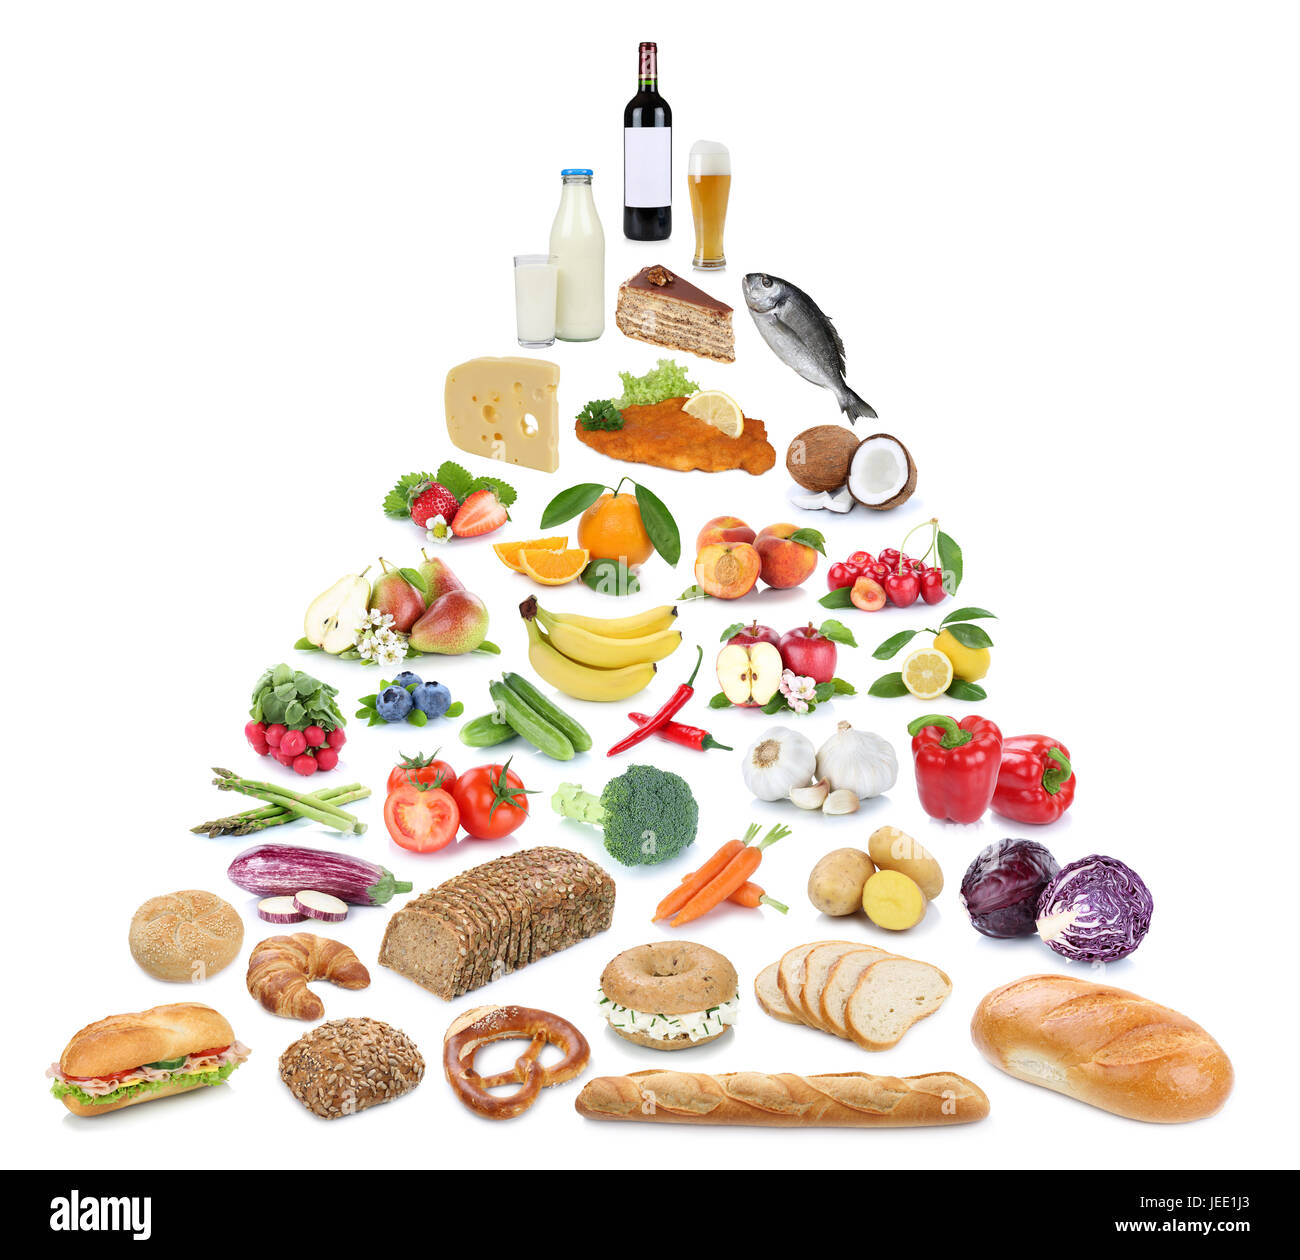 Pyramide alimentaire saine alimentation fruits et légumes fruits collection isolé sur fond blanc Banque D'Images